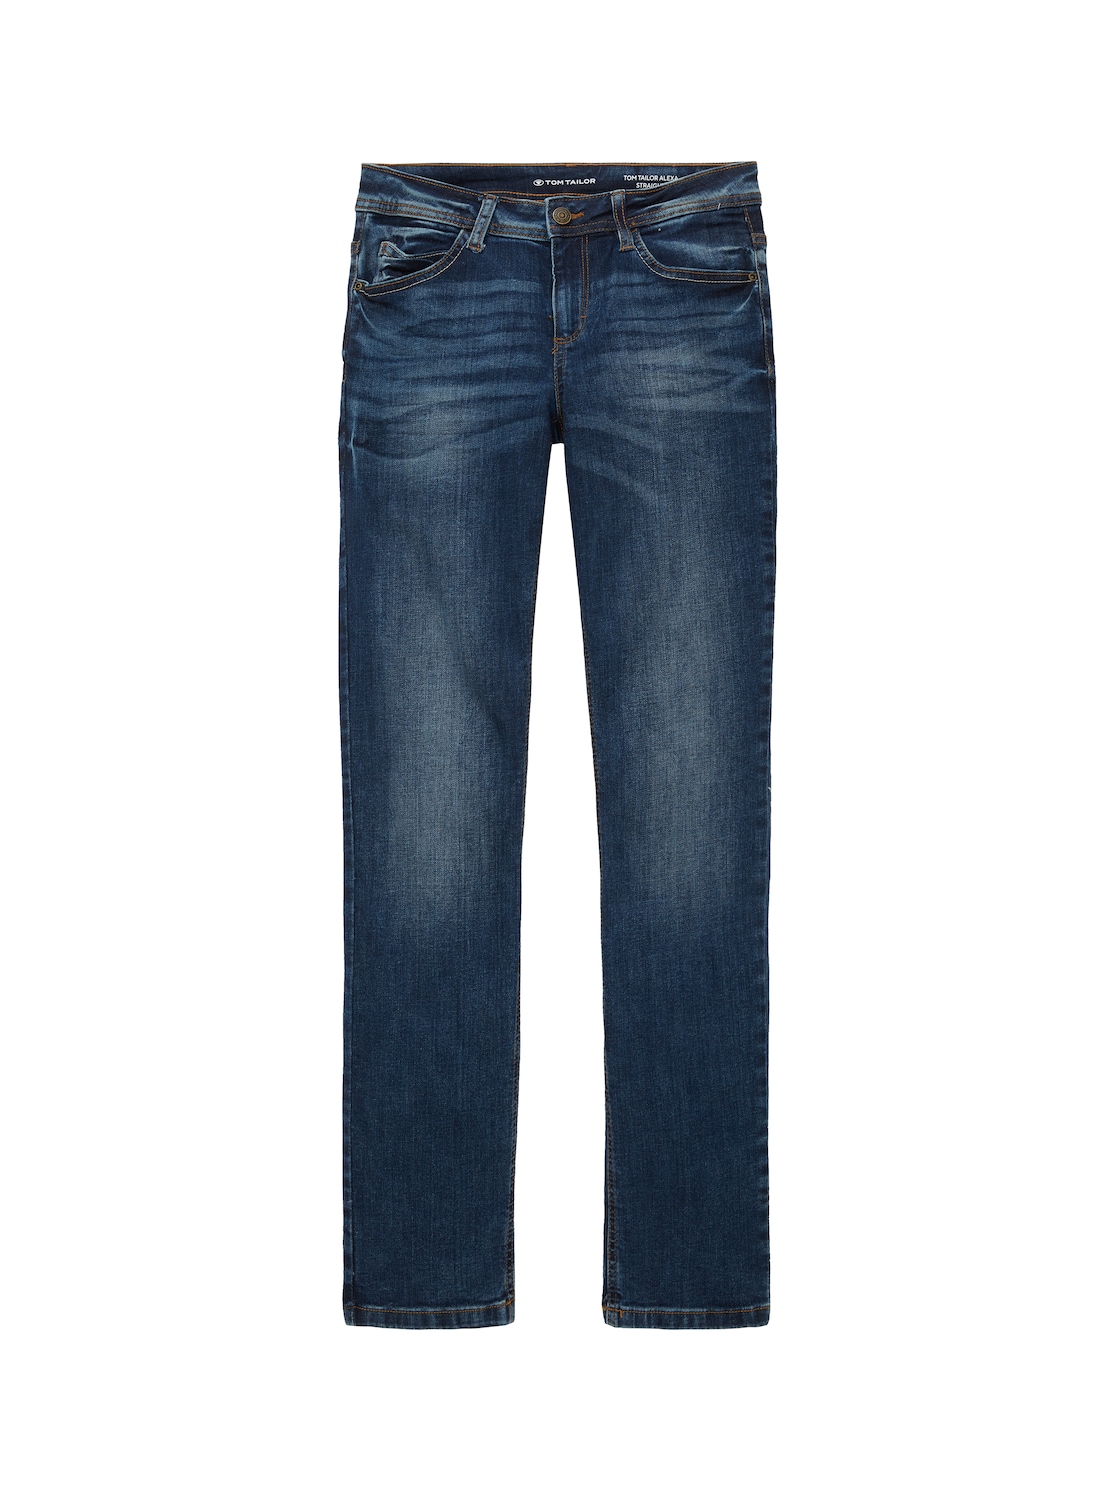 TOM TAILOR Damen Alexa Straight Jeans mit Bio-Baumwolle, blau, Uni, Gr. 34/30